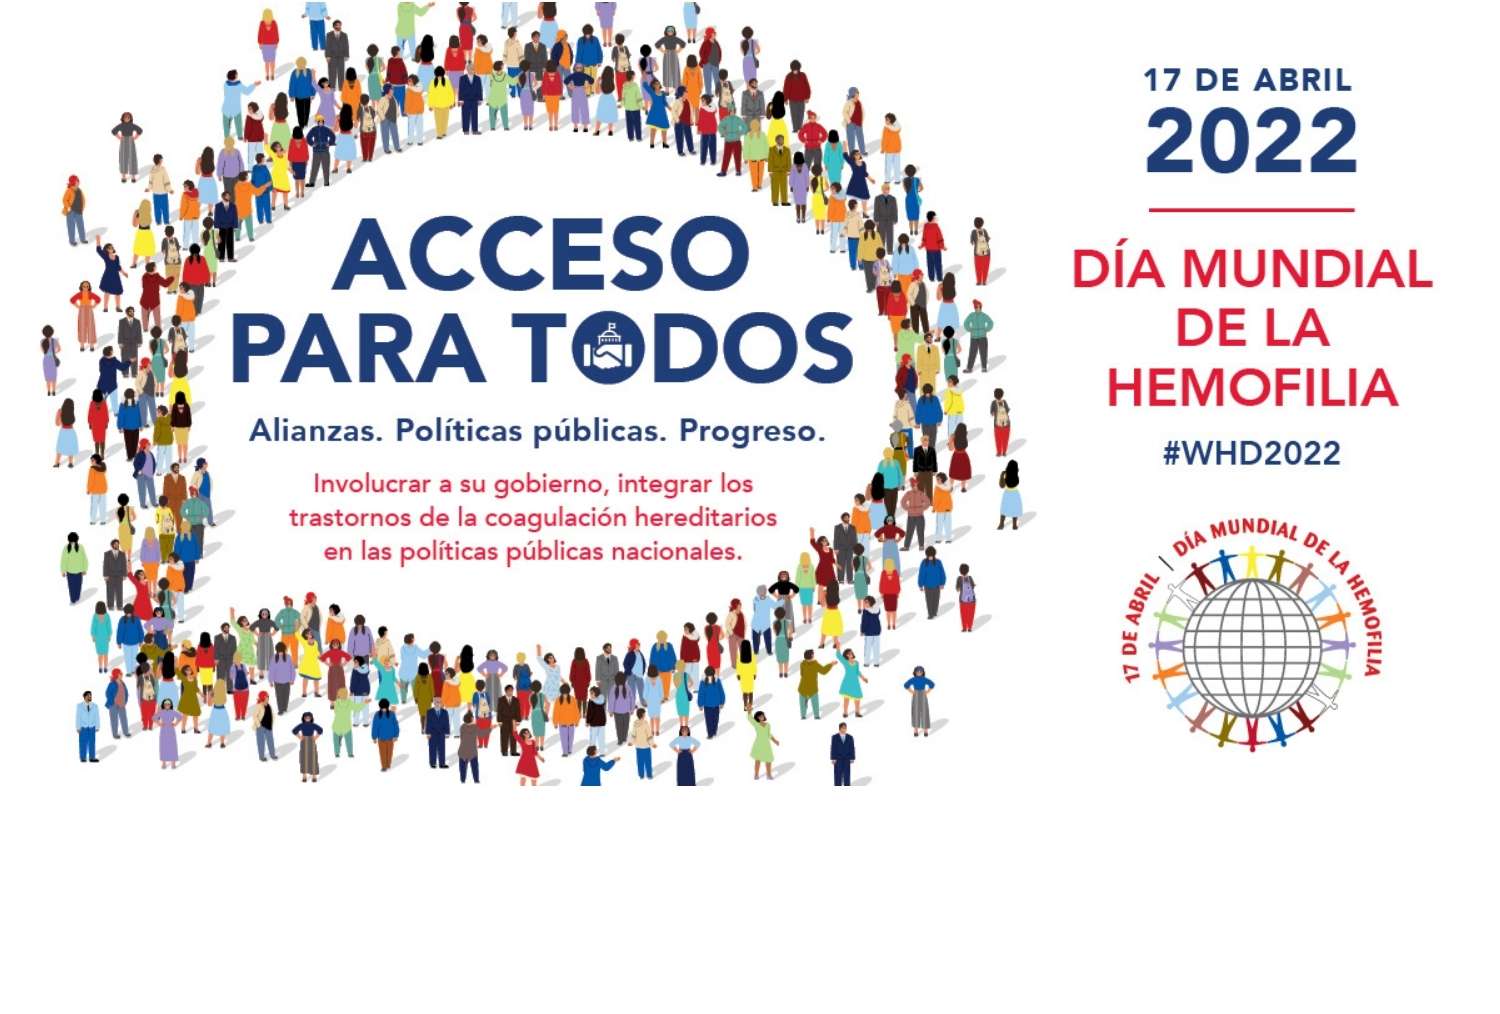 Día Mundial de la Hemofilia 2022